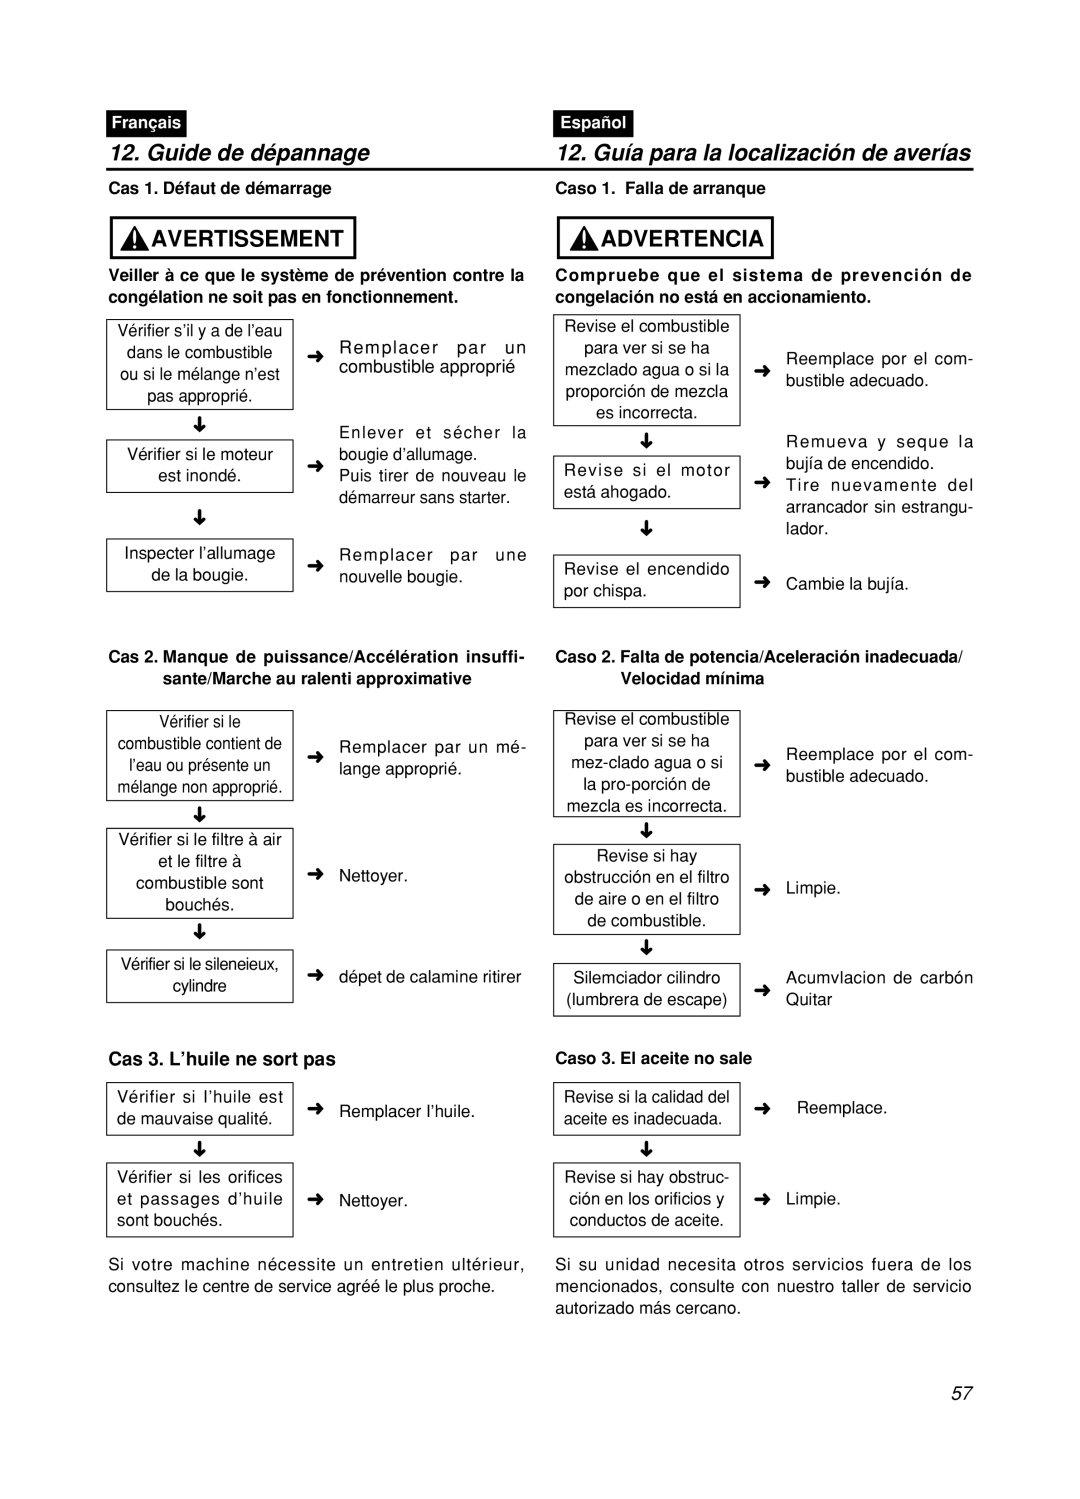 Zenoah GZ400 Guide de dépannage, 12. Guía para la localización de averías, Avertissement, Advertencia, Français, Español 